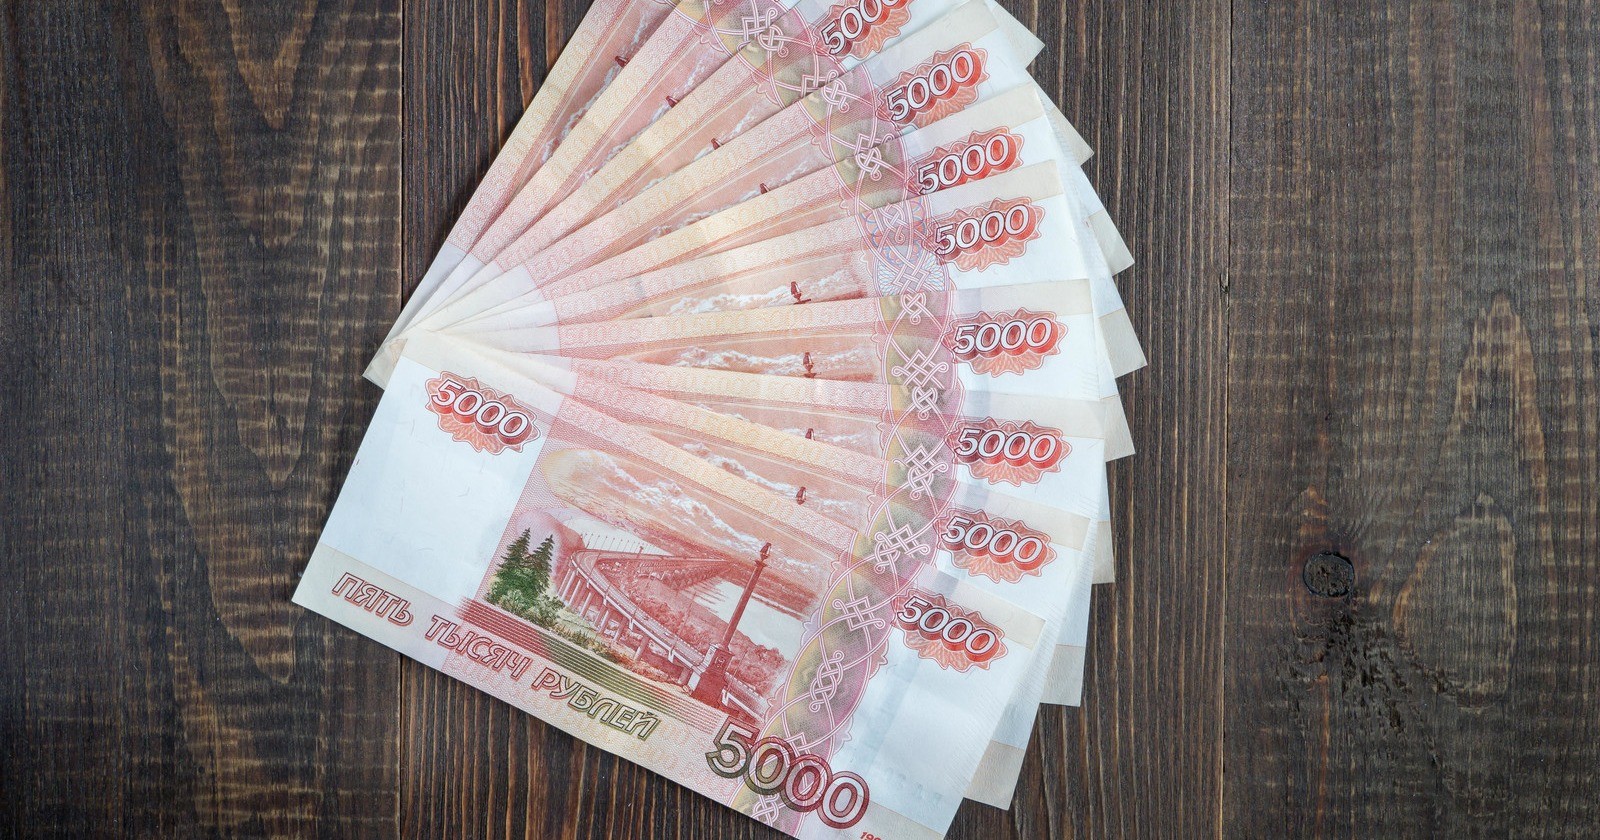 В Москве кассирша забрала у покупателей 40 миллионов и сбежала